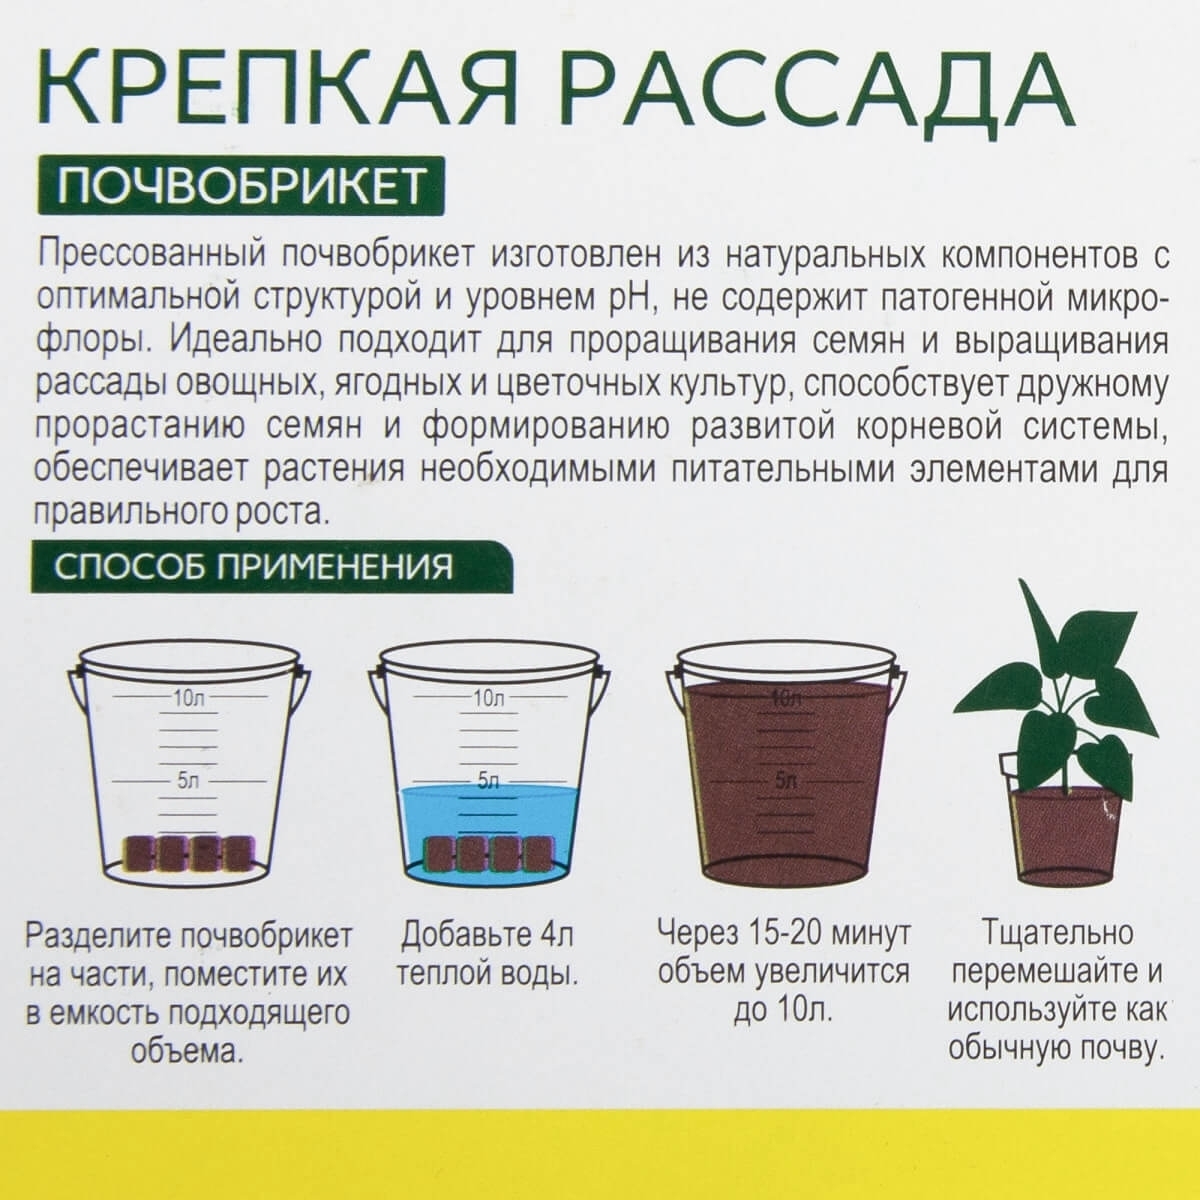 Шпаргалки для выращивания рассады: выбор контейнера, питание и другие полезные детали